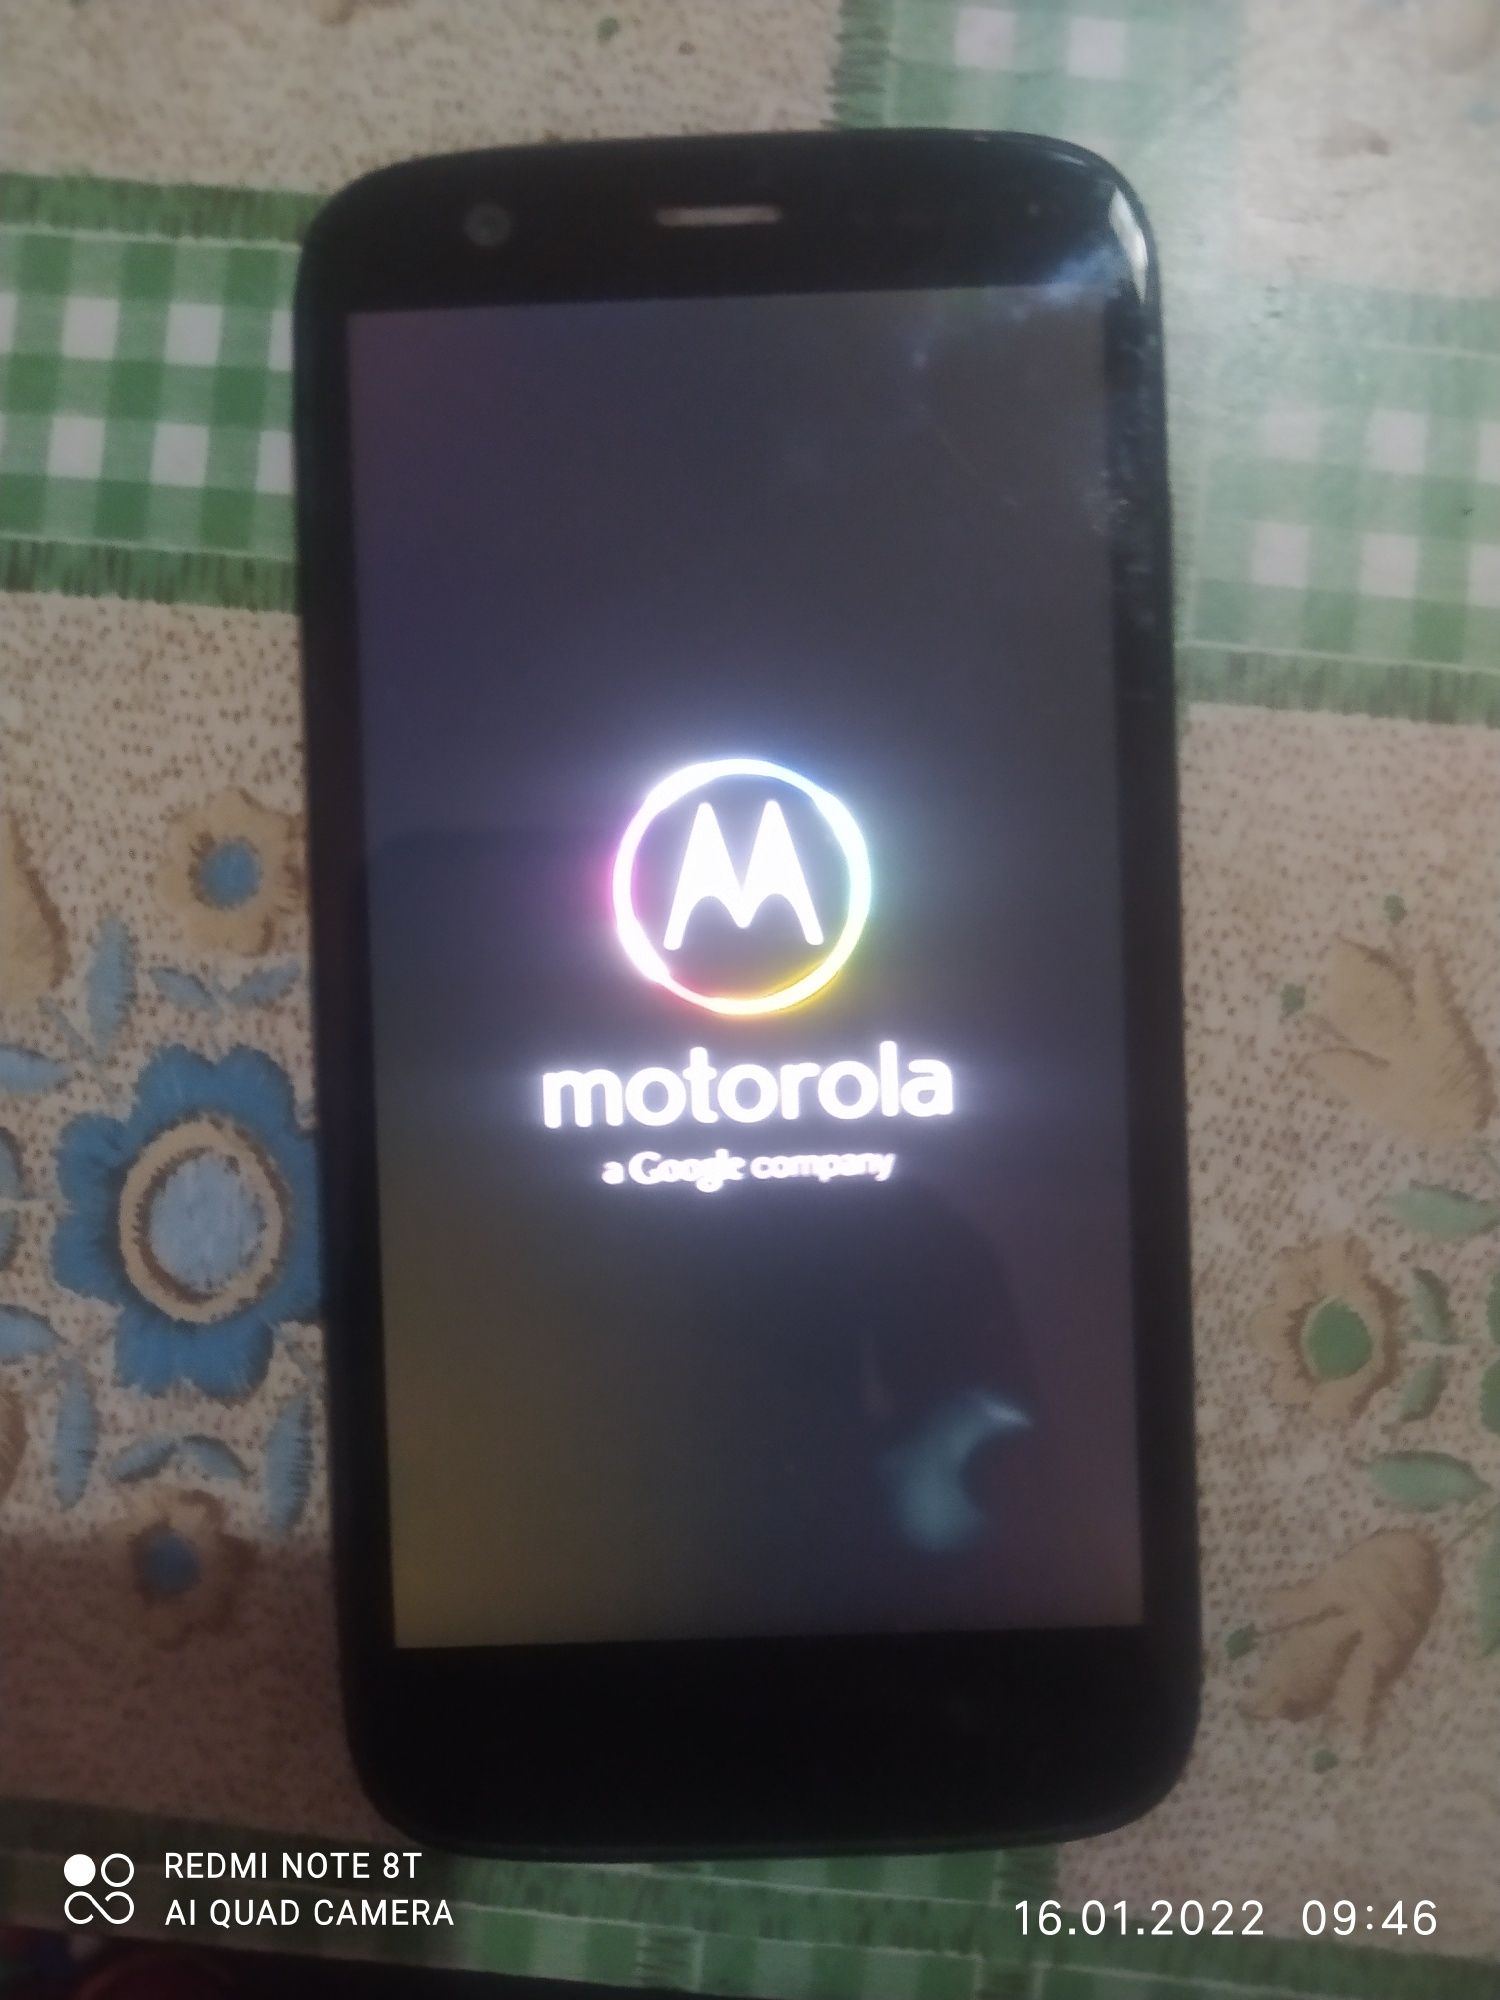 Motorola perfectum mobile